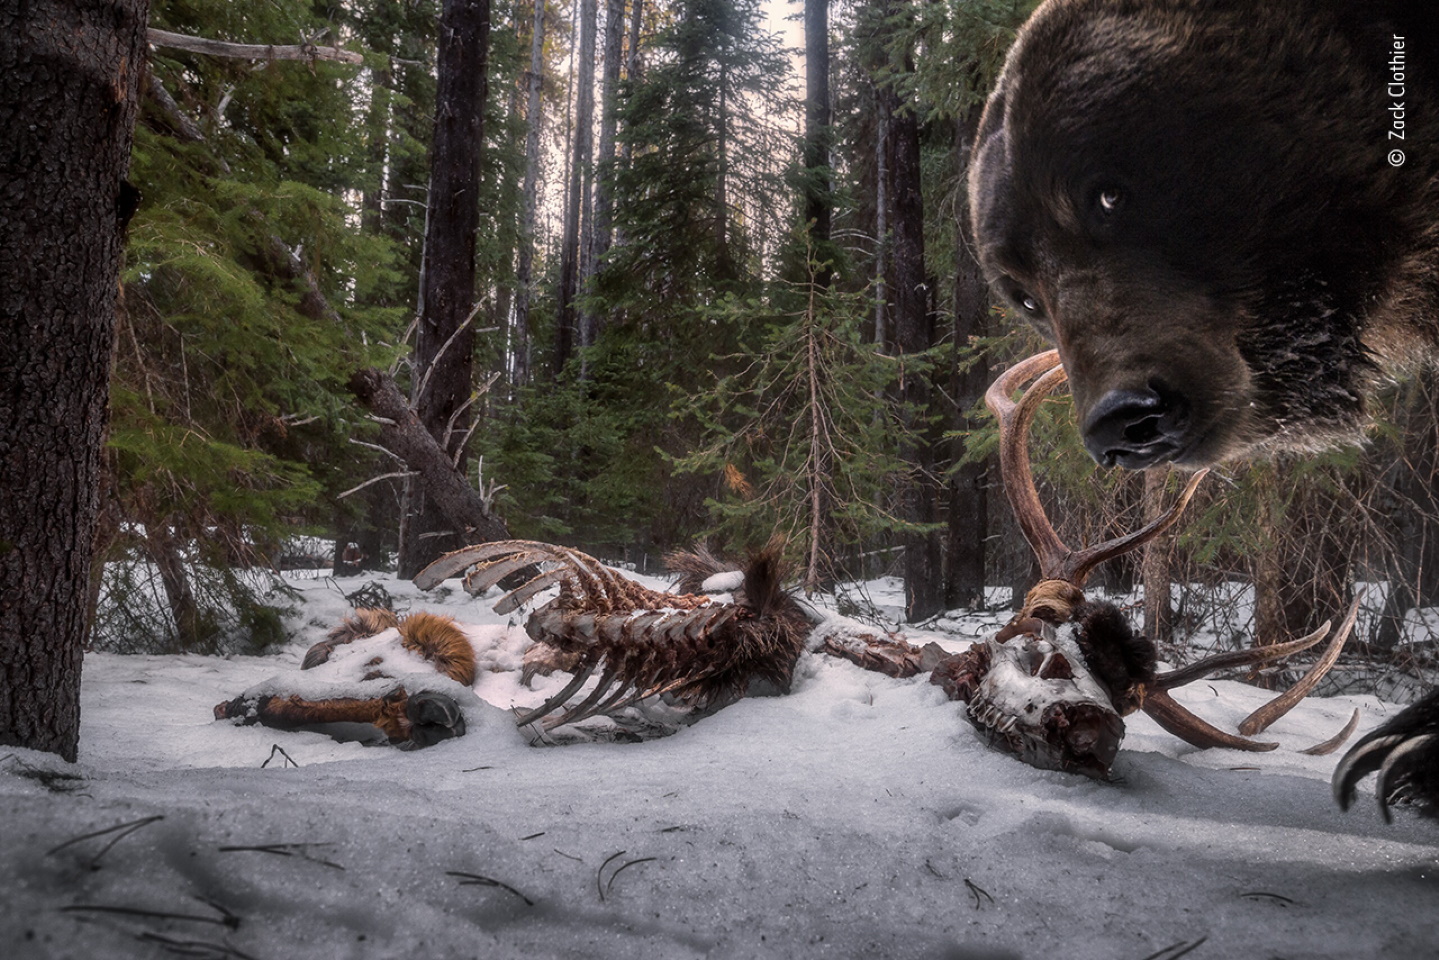 «Остатки пира гризли». Победитель в категории "Животные в среде обитания". Бурый медведь (Ursus arctos) - один из самых крупных наземных хищников. Фото: © Zack Clothier, Wildlife Photographer of the Year